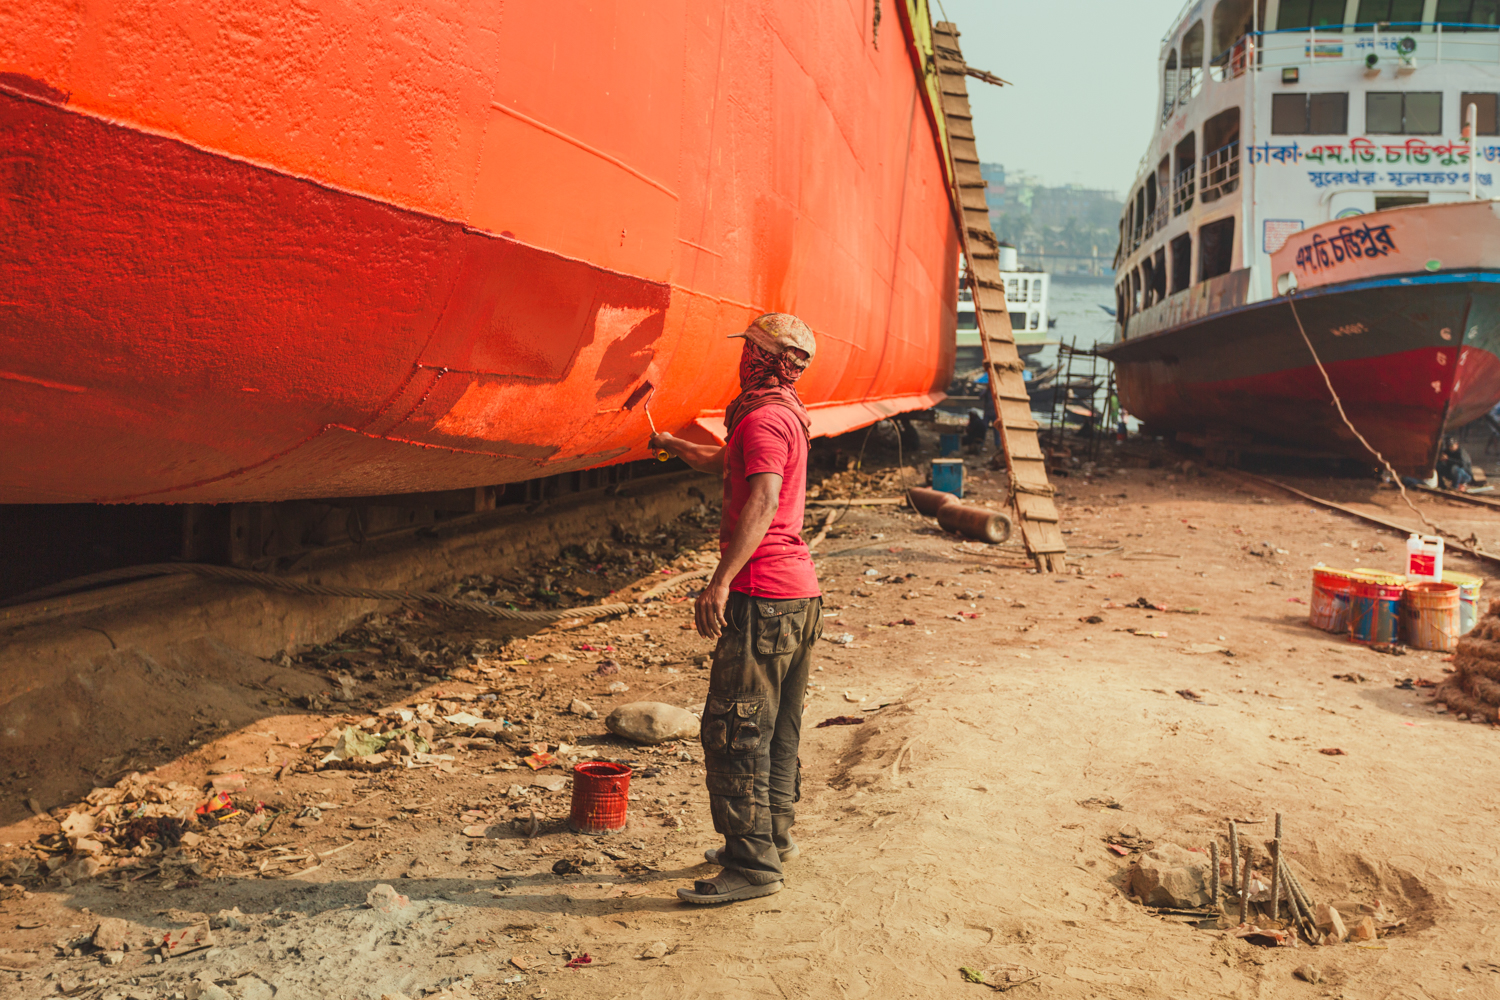 Final paint touches to ship at Dhaka, Bangladesh Shipyard.